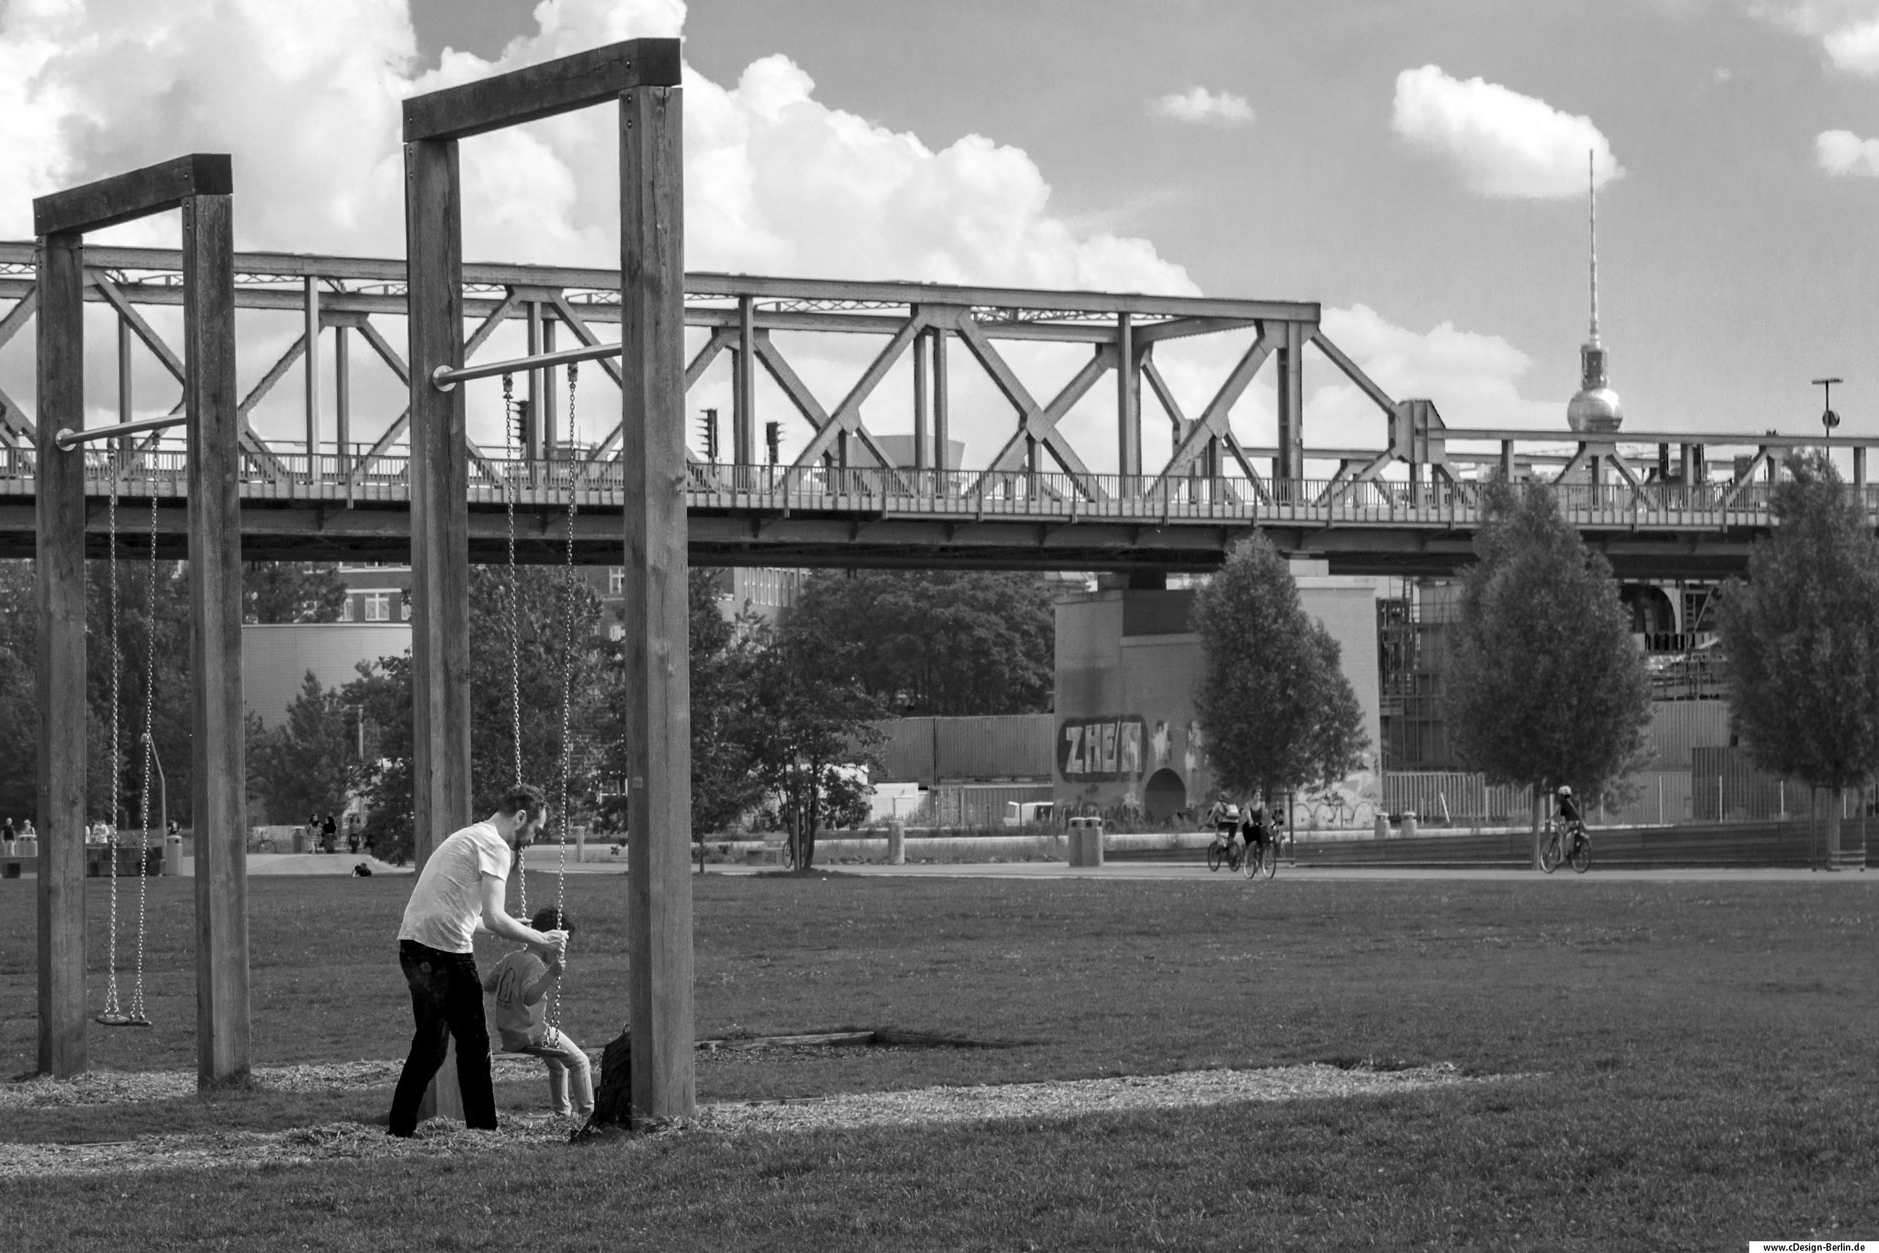 Komm Papa wir gehen Schaukeln. Dieses Foto entstand in einem belebten Park im Herzen Berlins. Am linken Bildrand sieht man einen Vater auf einer Wiese, der sein Kind beim Schaukeln behilflich ist. Seine Hände umklammern die Schaukel, sein Blick auf den Kopf seines Kindes gerichtet. Die Schaukel ist an zwei hohen Balken befestigt, rechts von ihnen befindet sich ebenfalls eine Schaukel, leerstehend.
In der Bildmitte ist eine Brücke zu sehen, dort führt die Berliner S-Bahn lang. Hinter der Brücke rechts vom Bild sieht man in einer Silhouette den Berliner Fernsehturm. Unter der Brücke ist ein Rad-Gehweg, darauf sind Fahrradfahrer zu sehen. Am oberen Bildrand sind der Himmel mit dicken Wolken zu sehen. Dieses Foto habe ich ebenfalls Schwarz/ weiß gehalten.